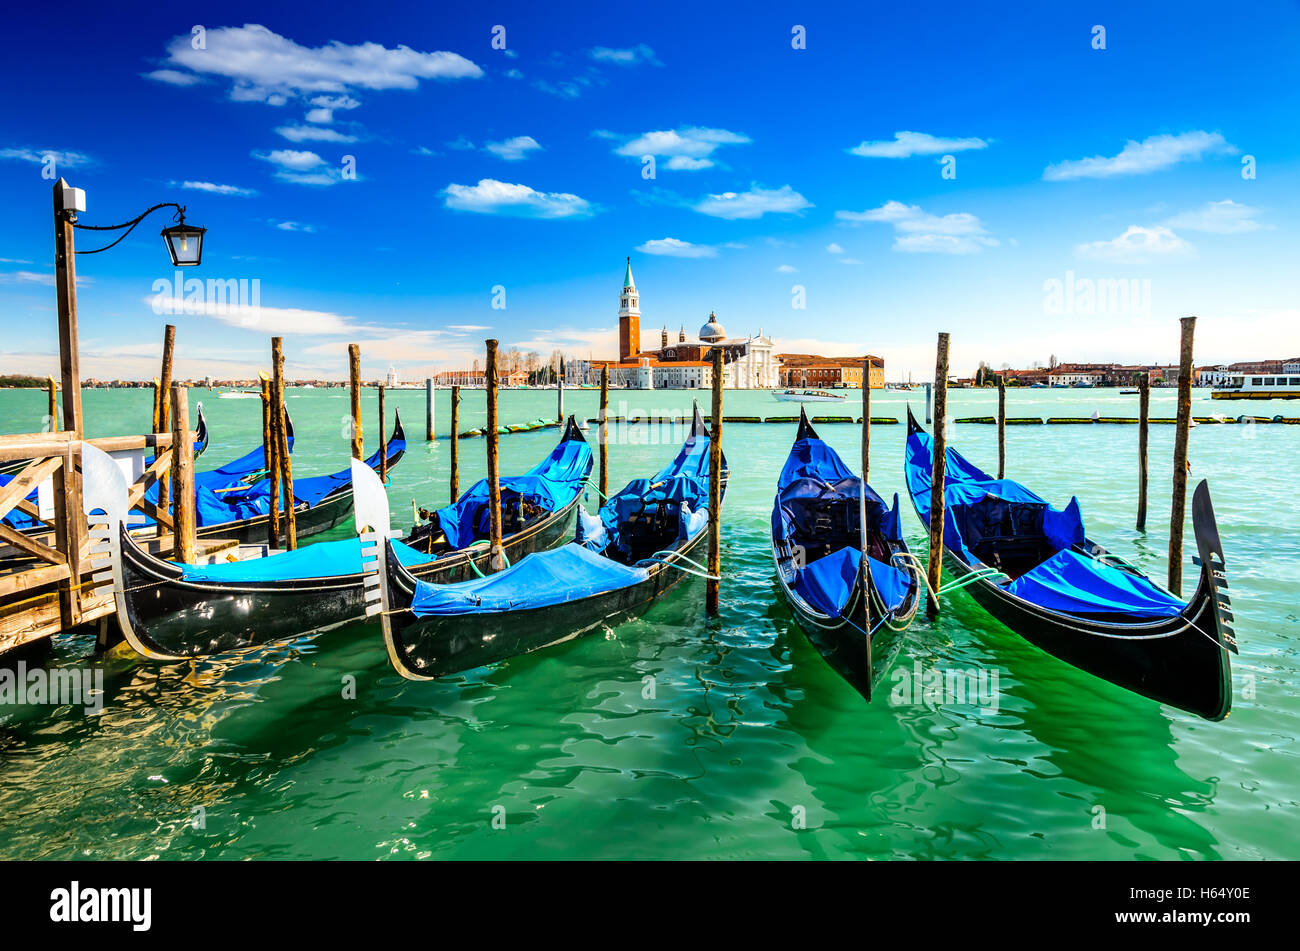 Venice Italy. Gondolas in Grang Canal, San Marco Square with San Giorgio di Maggiore church in the background. Stock Photo